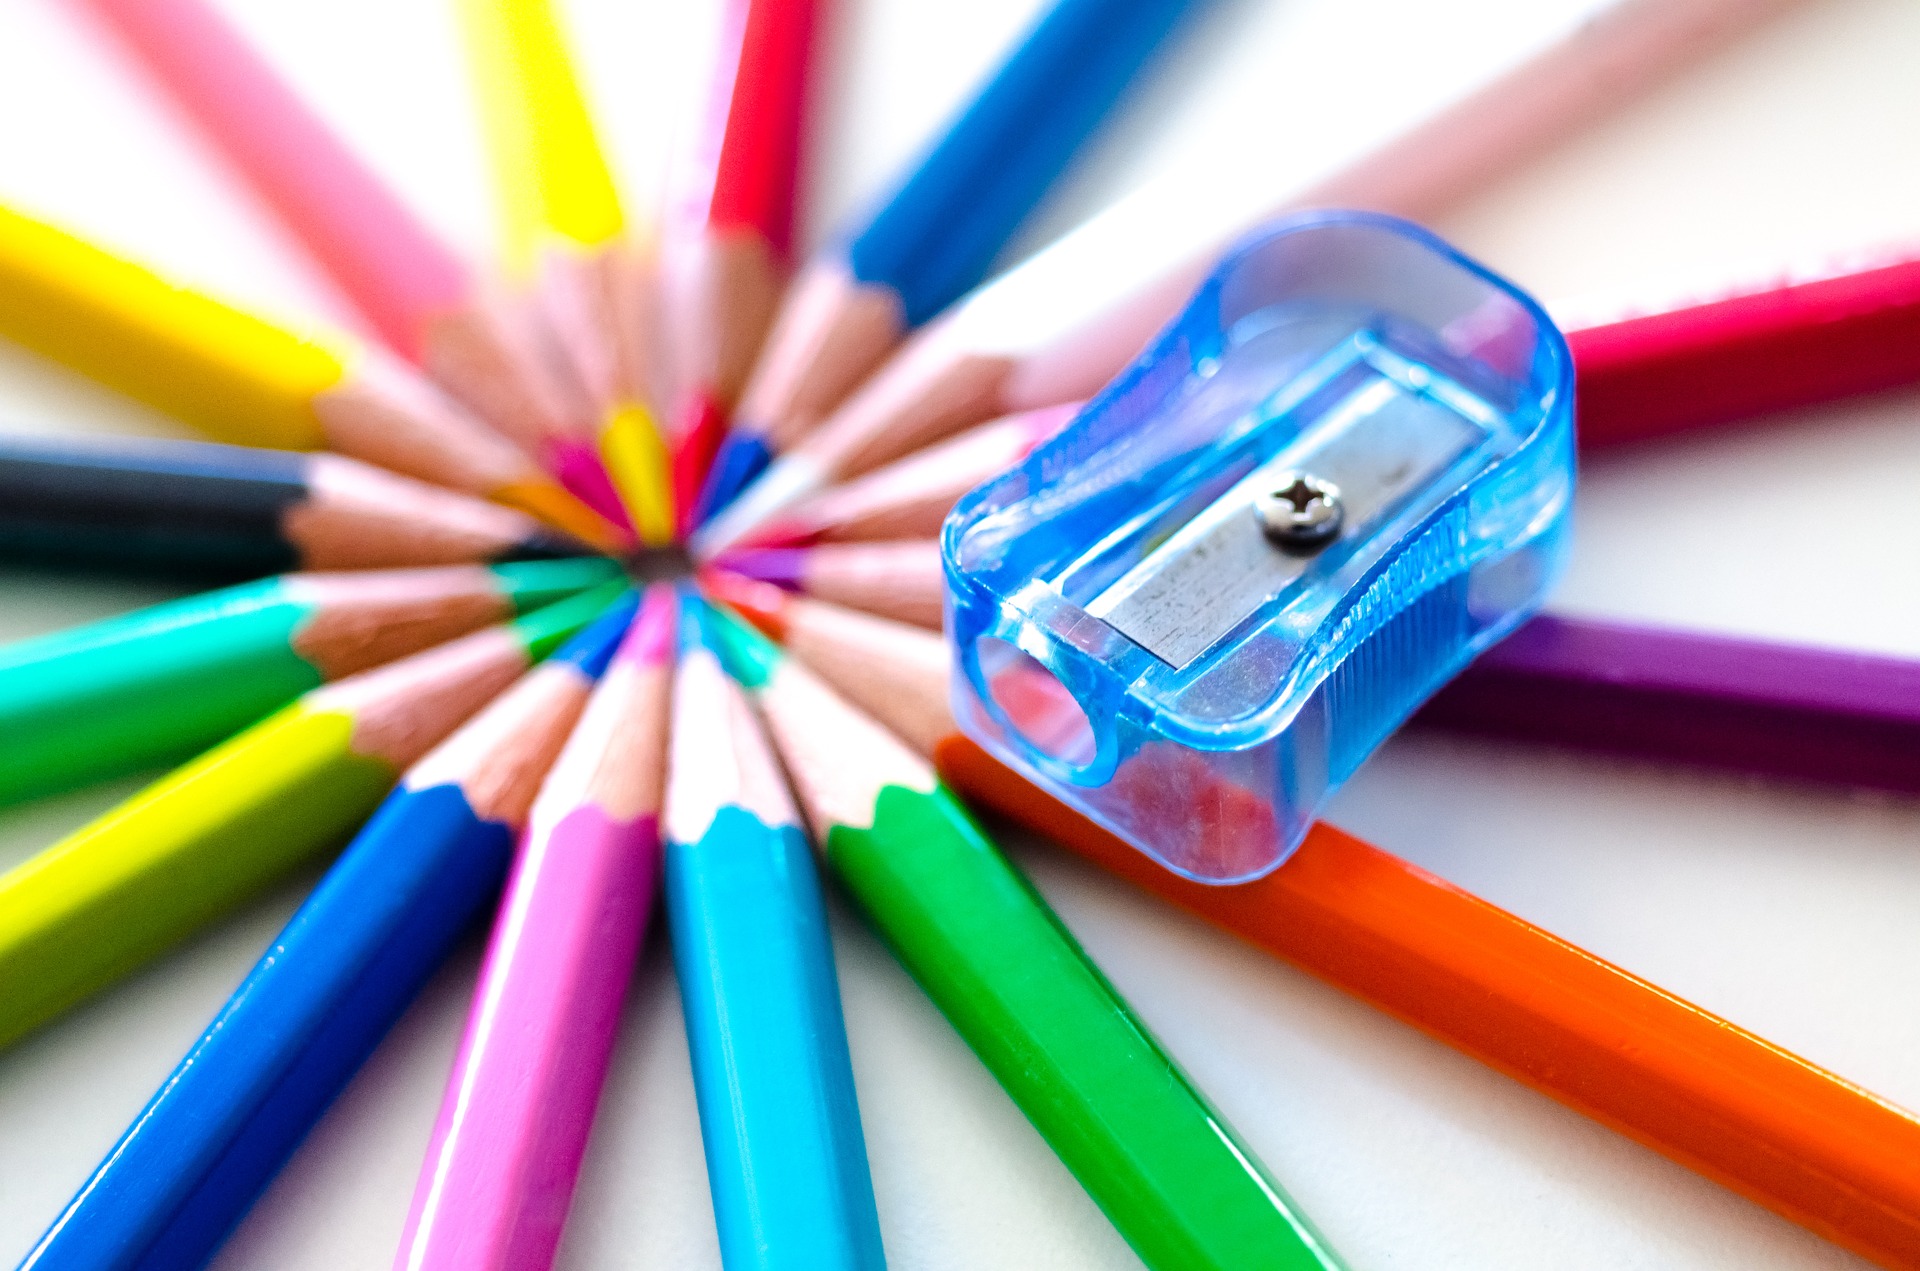 idéal pour les livres de coloriage et comme fournitures scolaires 120 Crayon De Couleurs Professionnel pour Enfants et Adultes Mines de qualité artiste douces et aux couleurs éclatantes 